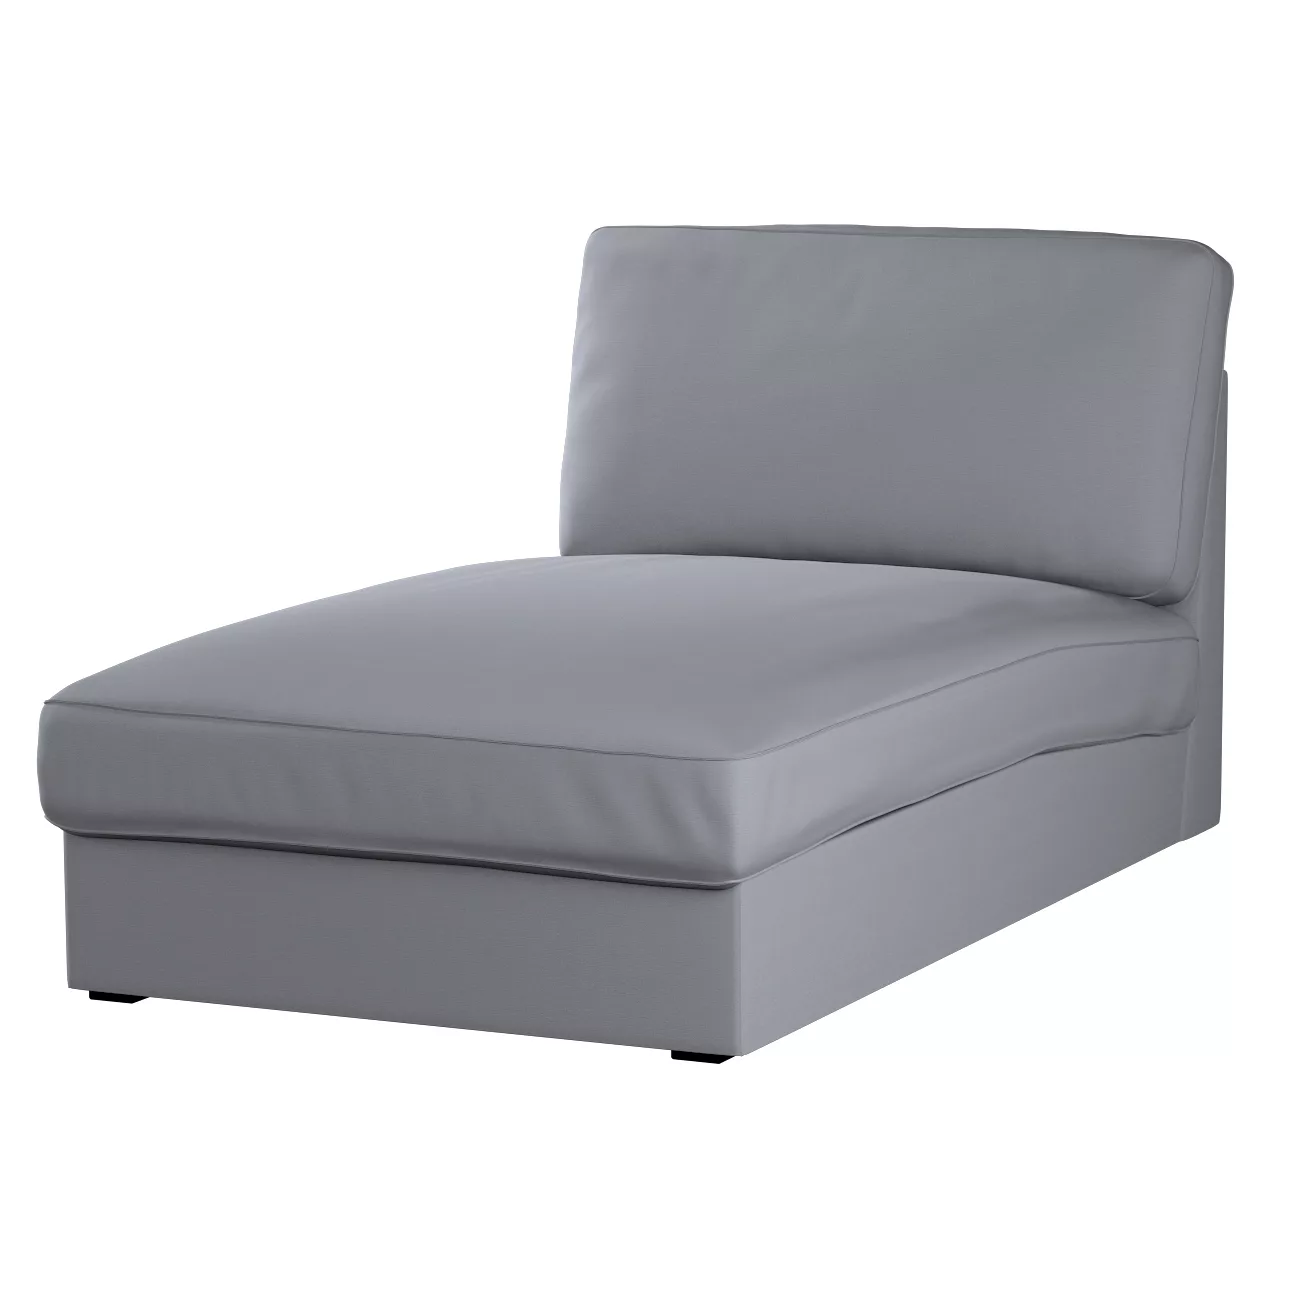 Bezug für Kivik Recamiere Sofa, grau, Bezug für Kivik Recamiere, Cotton Pan günstig online kaufen